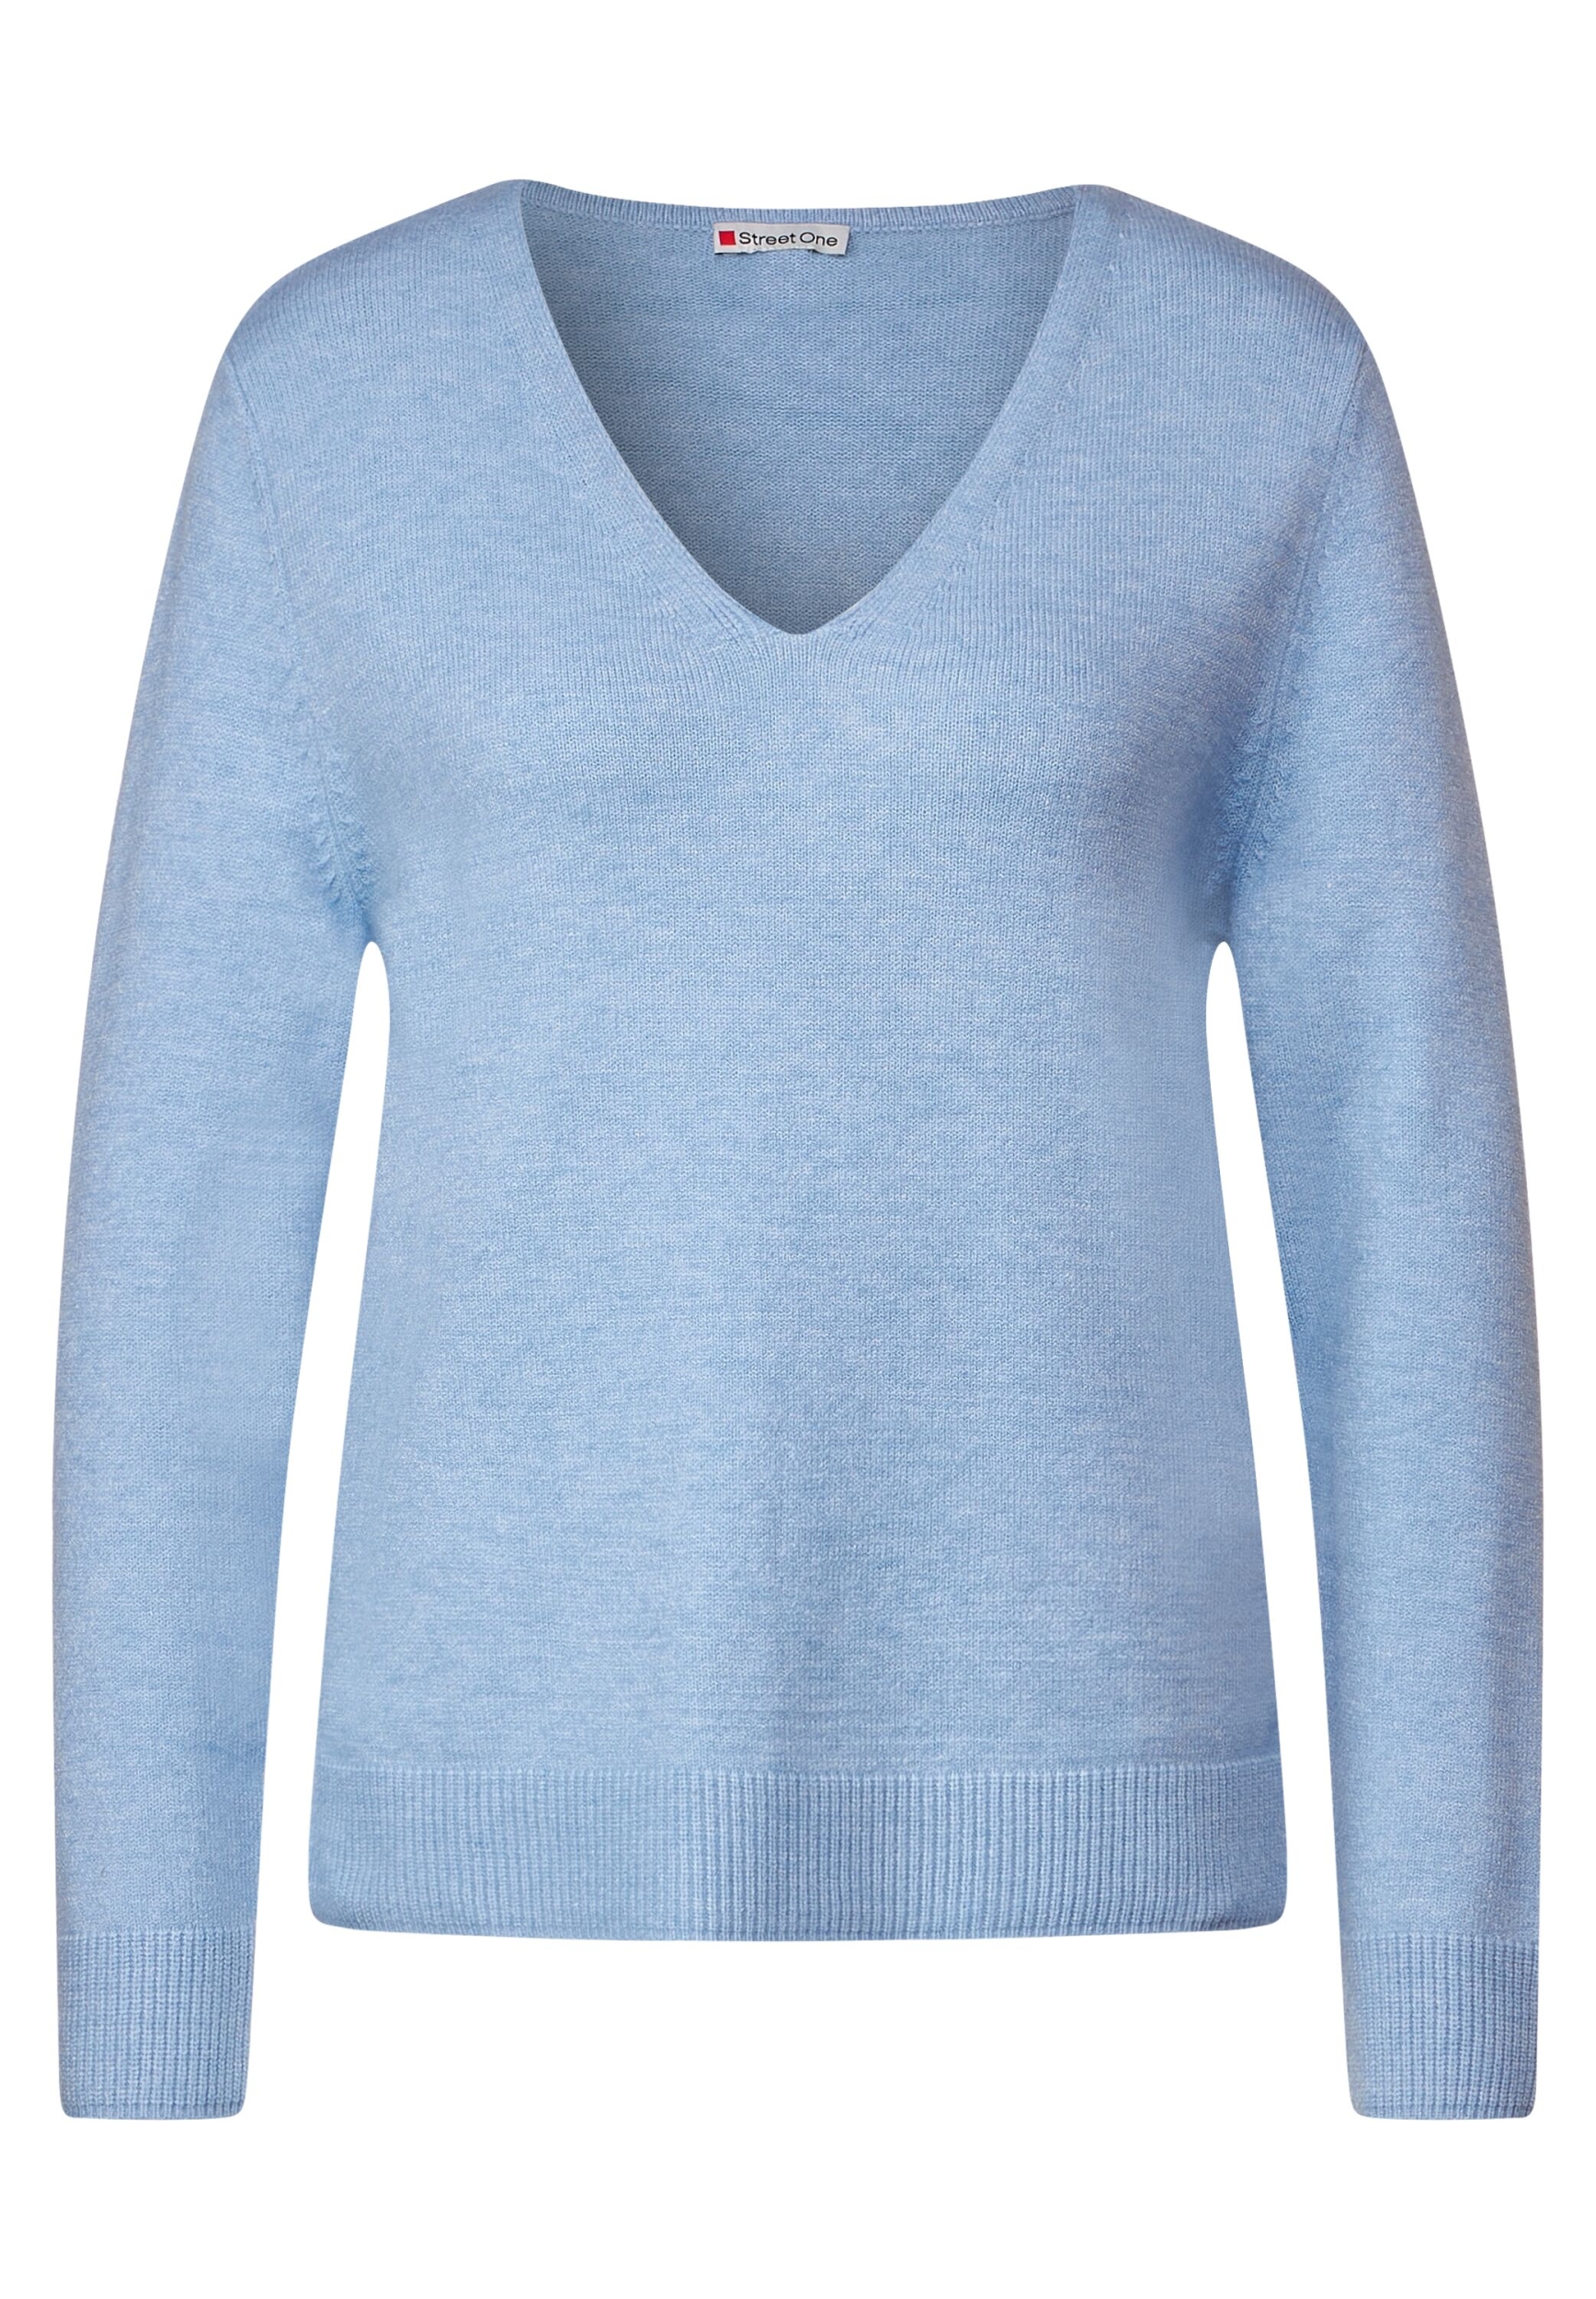 LTD v-neck | A302343-14962-40 | blue melange 40 | feather QR sweater